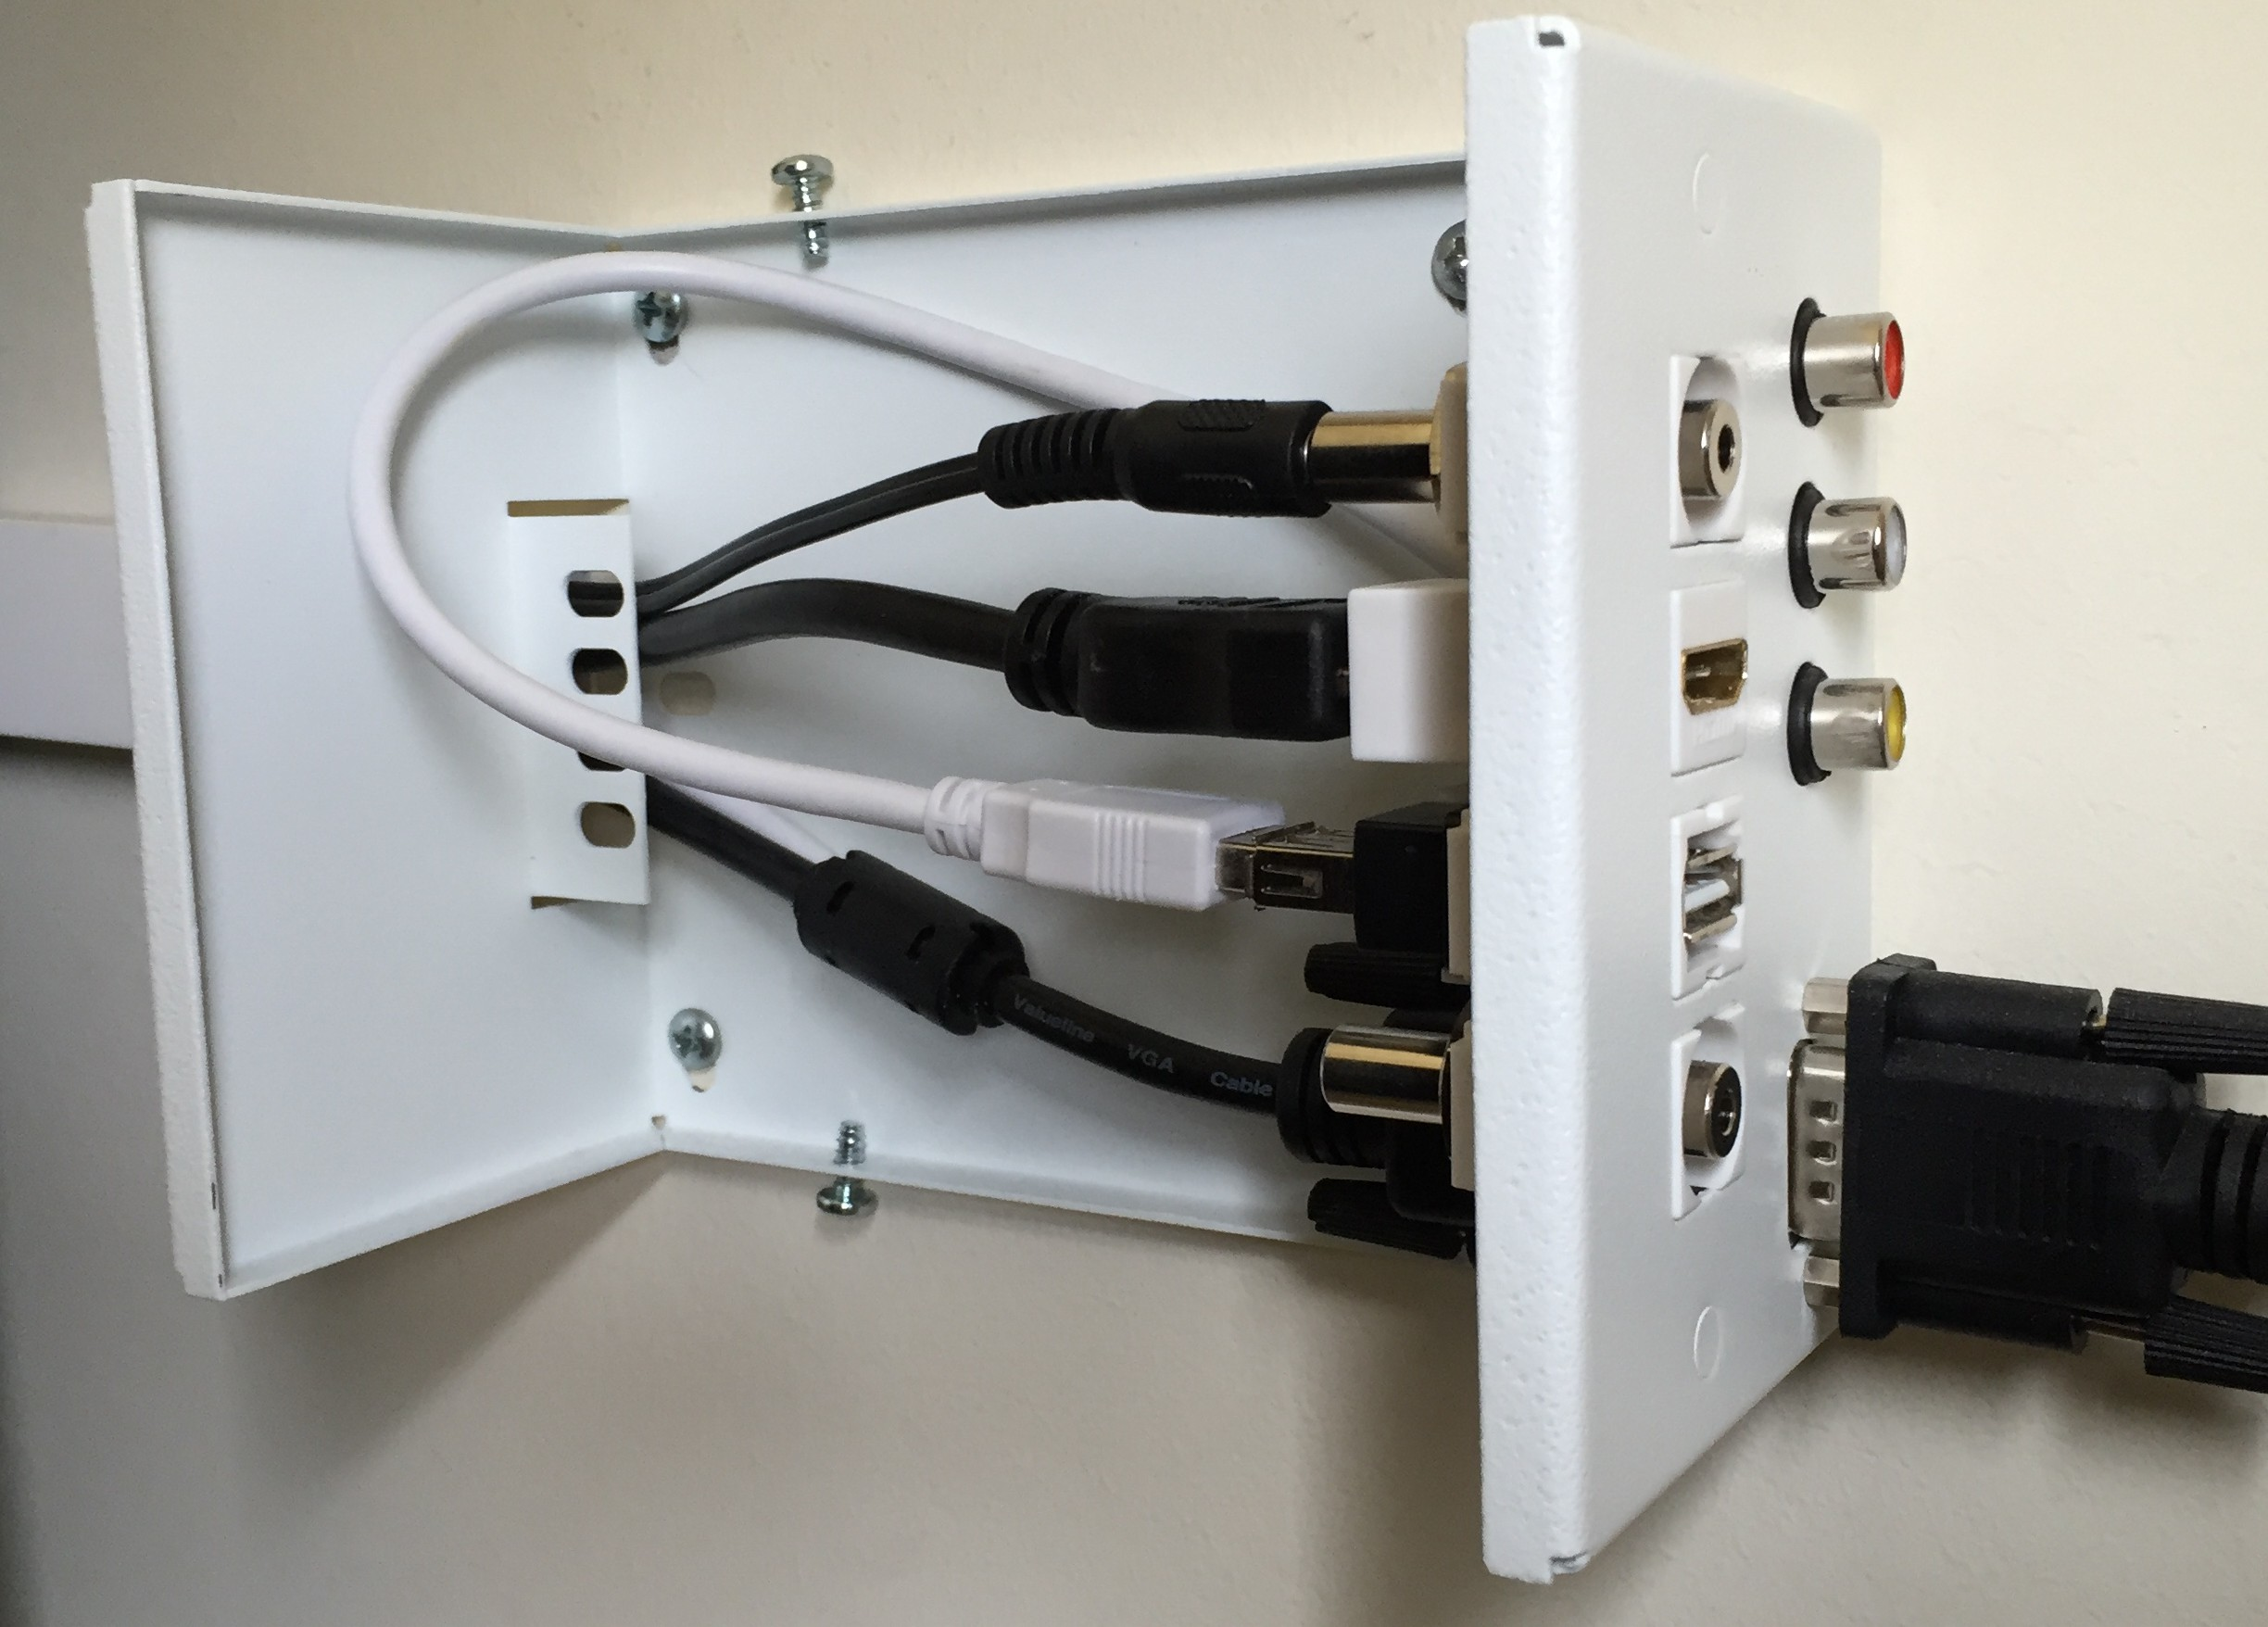 Caixa de conexións Cable minijack audio proxector.